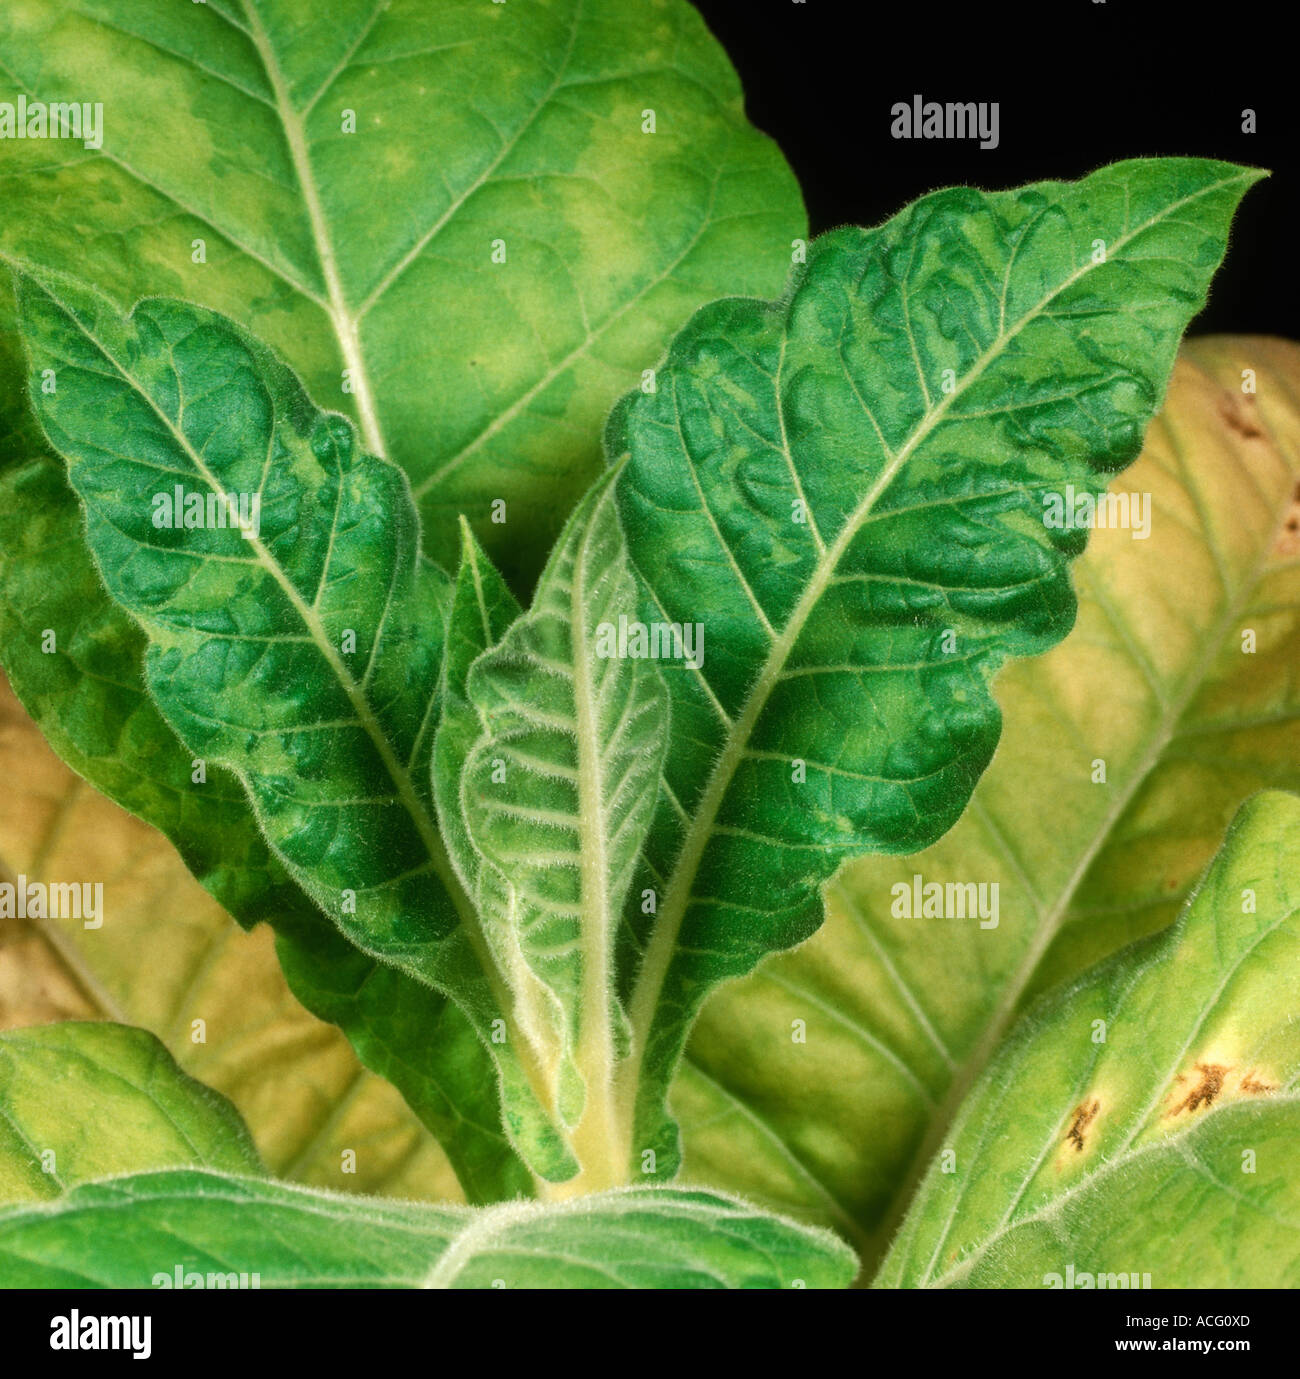 Tabak-Mosaik-Virus Symptome helle Bereiche und Verzerrungen in einem Tabakblatt Stockfoto